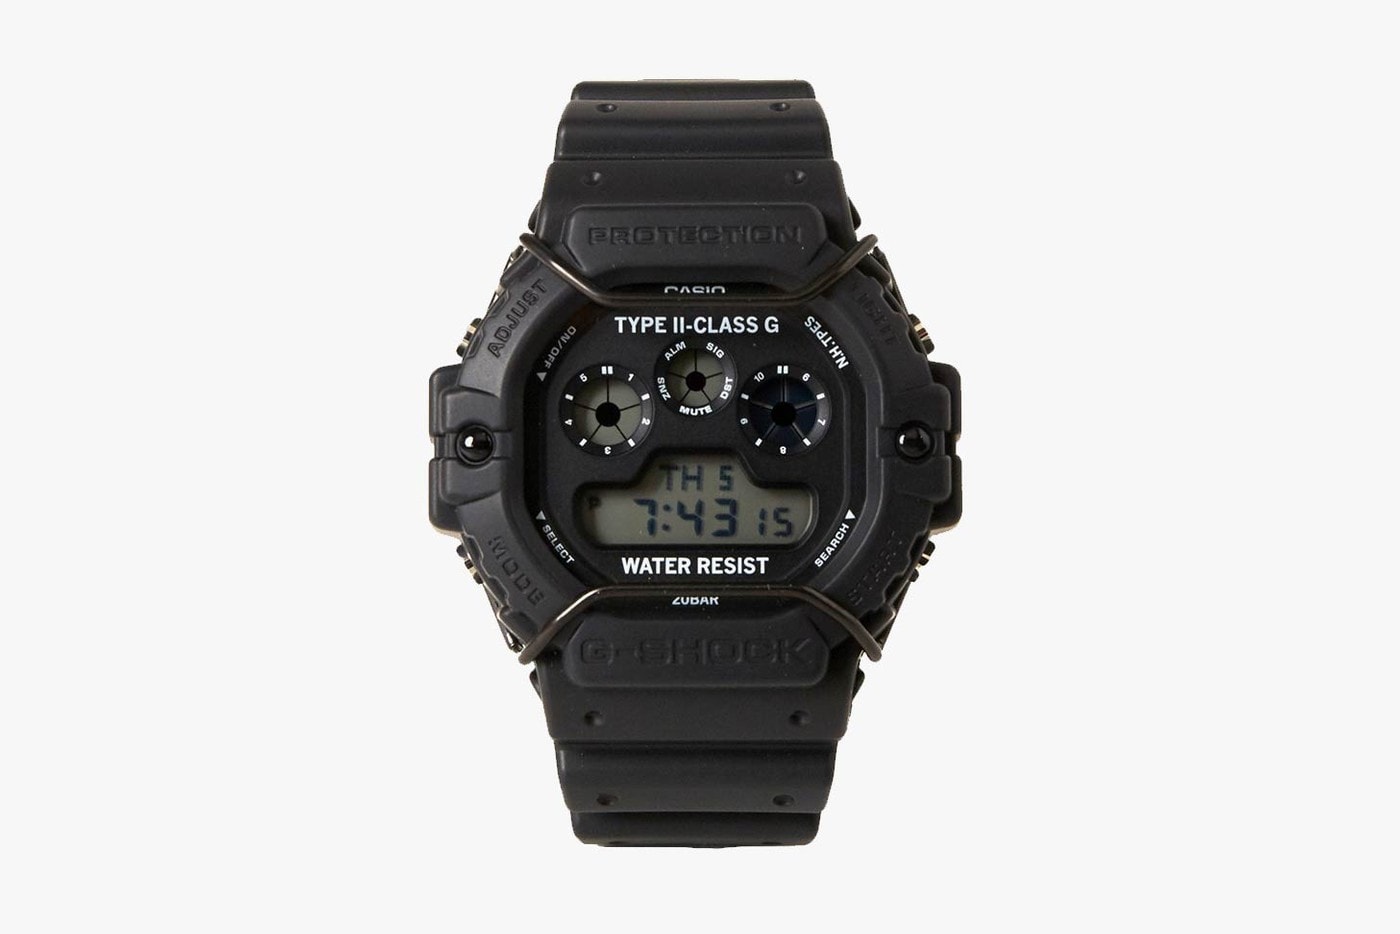 N.HOOLYWOOD x G-Shock 全新聯乘錶款發佈